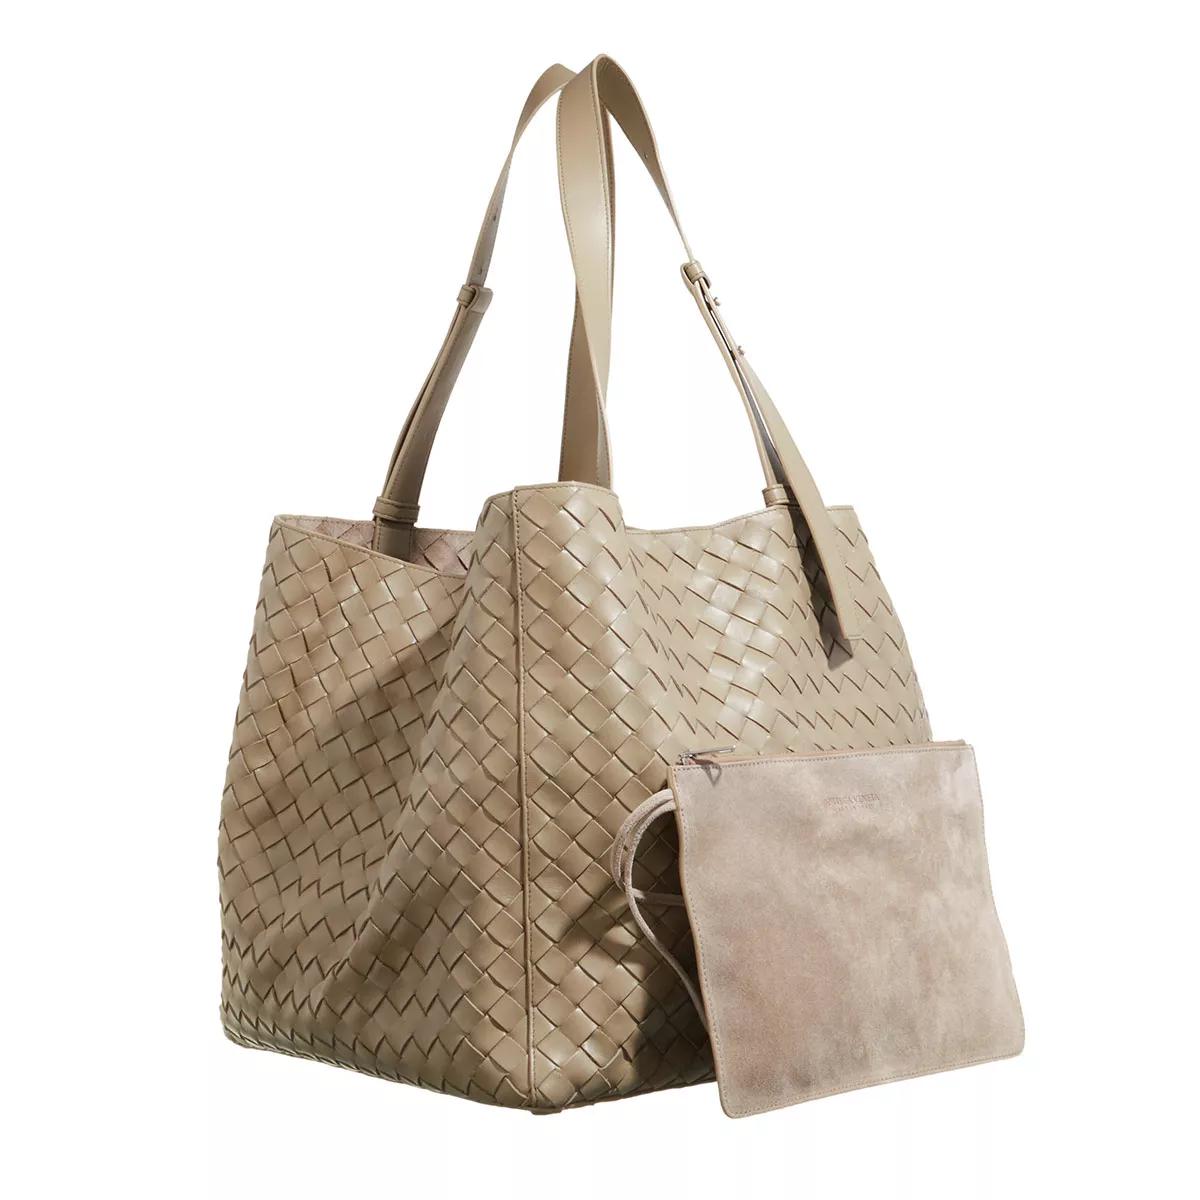 Bottega Veneta Shoppers Intrecciato Cube Tote Bag in taupe